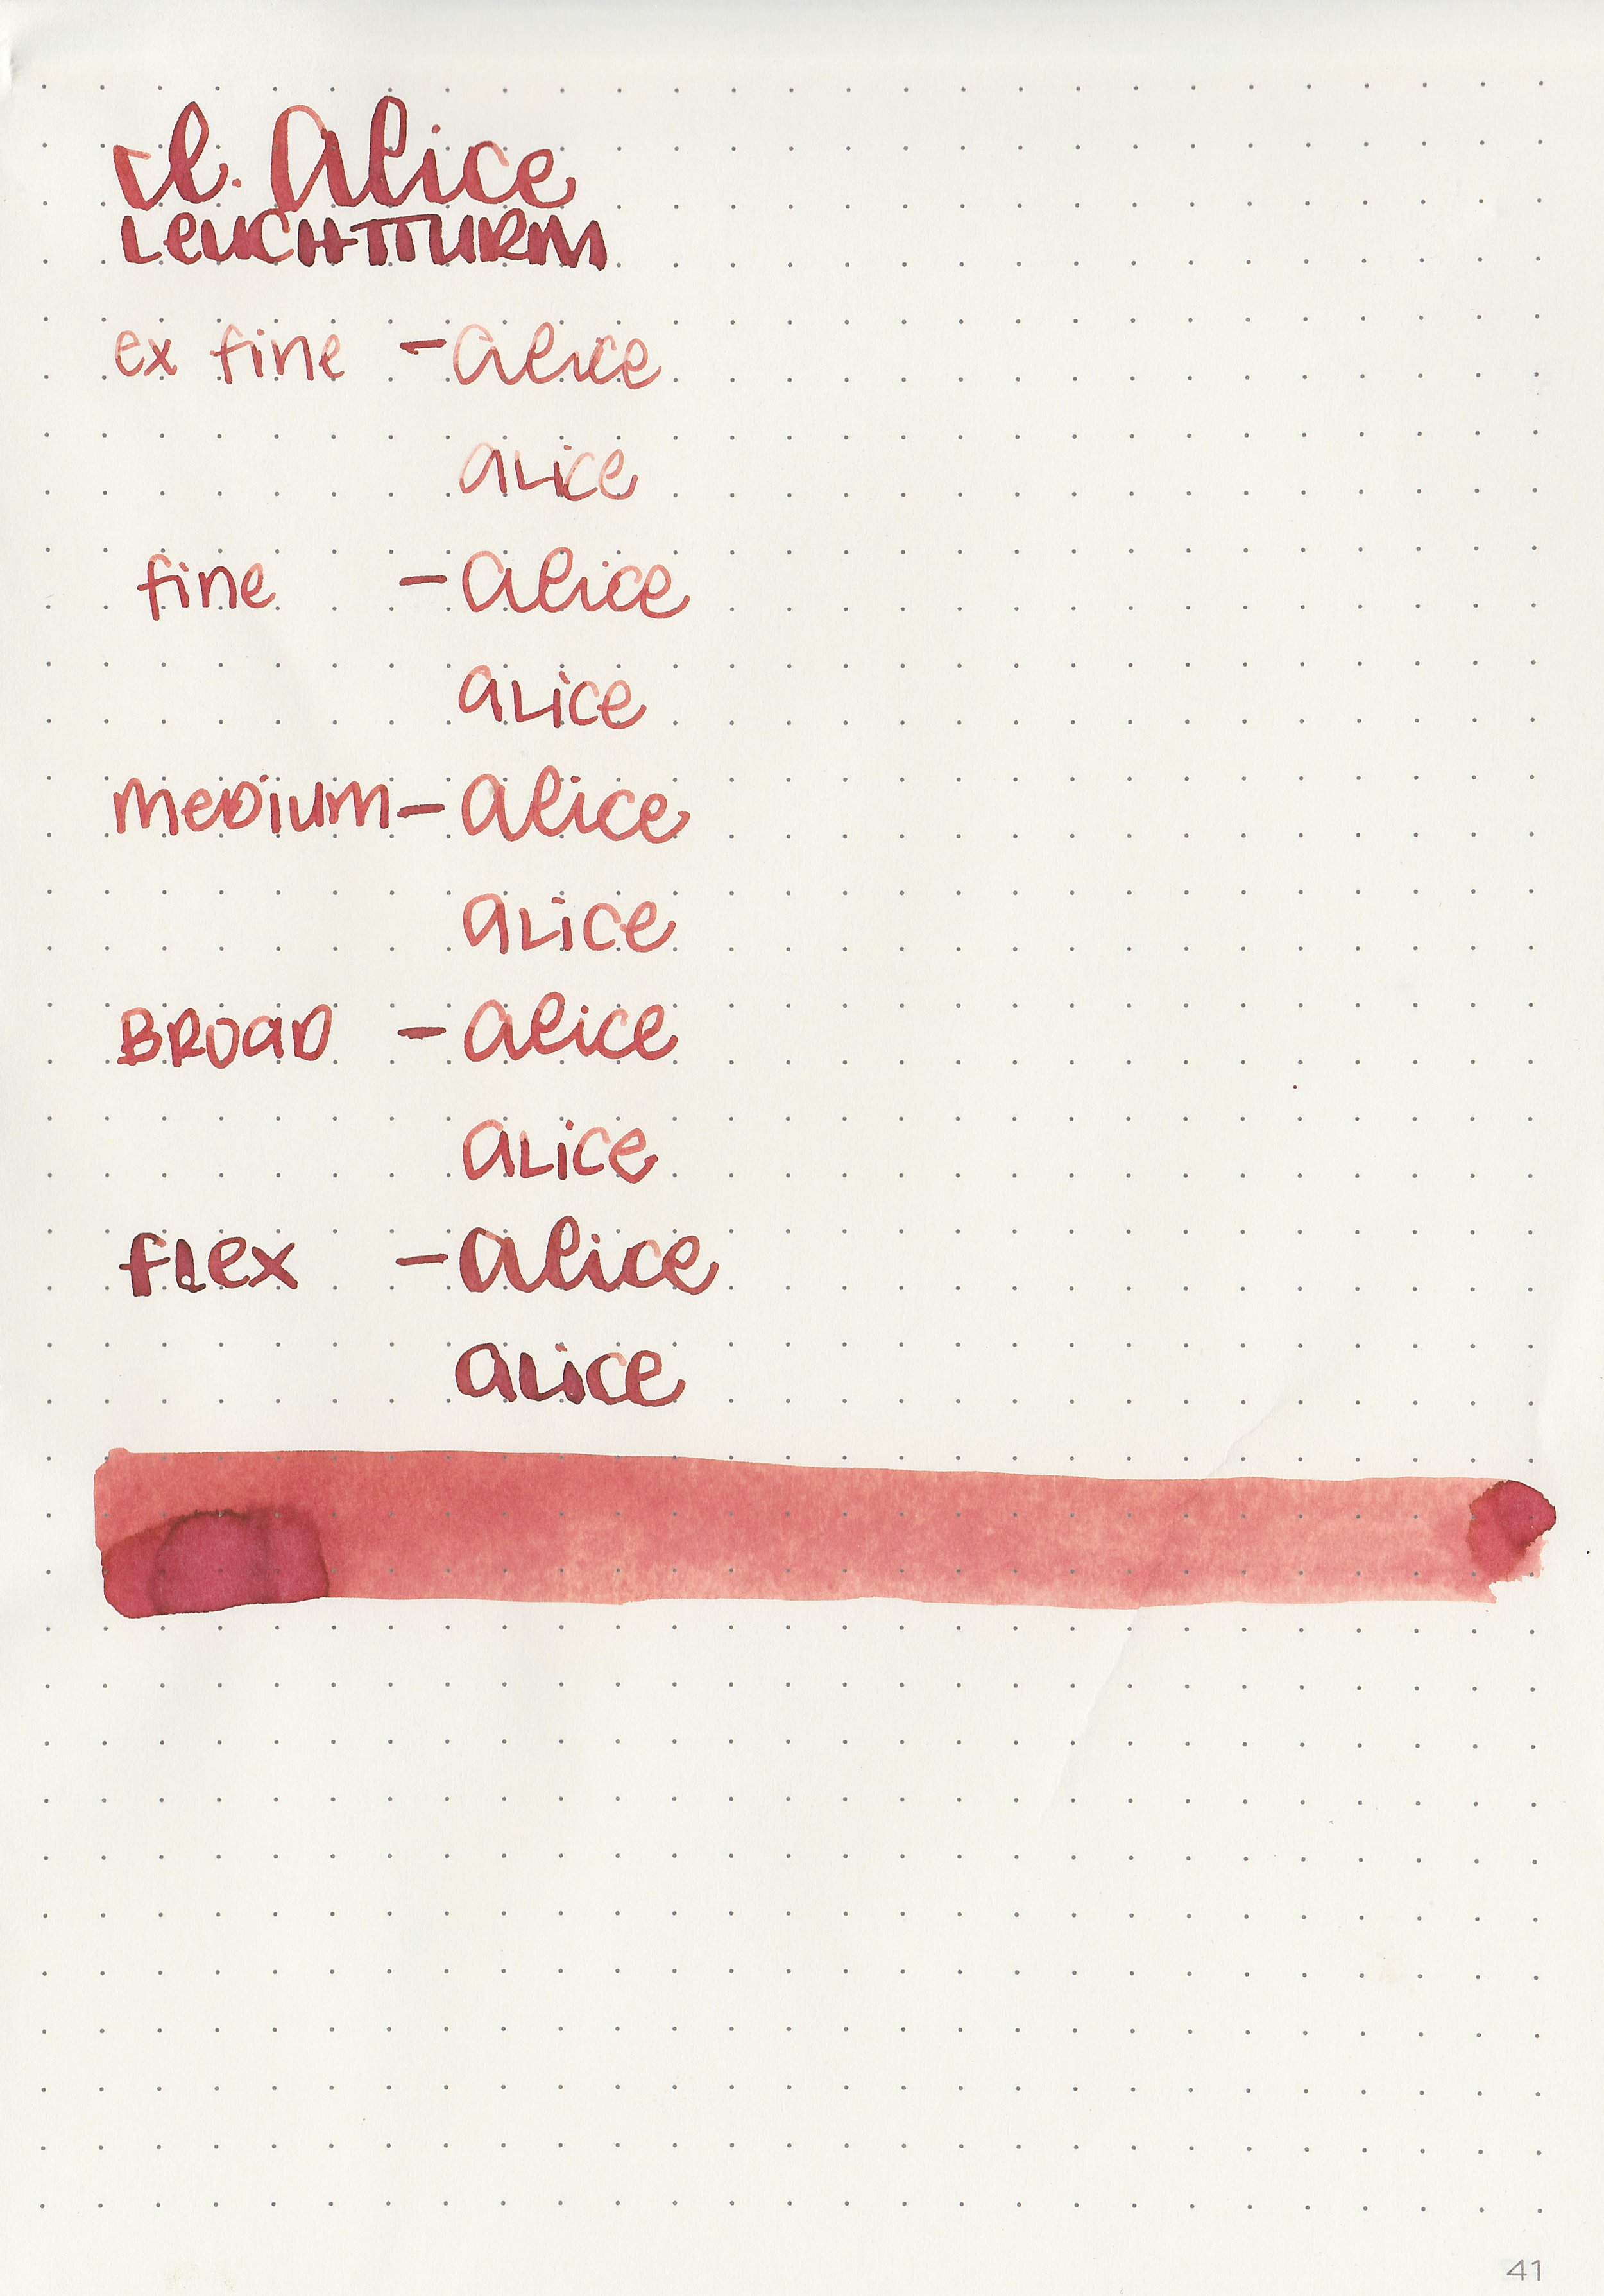 ink-alice-red-9.jpg